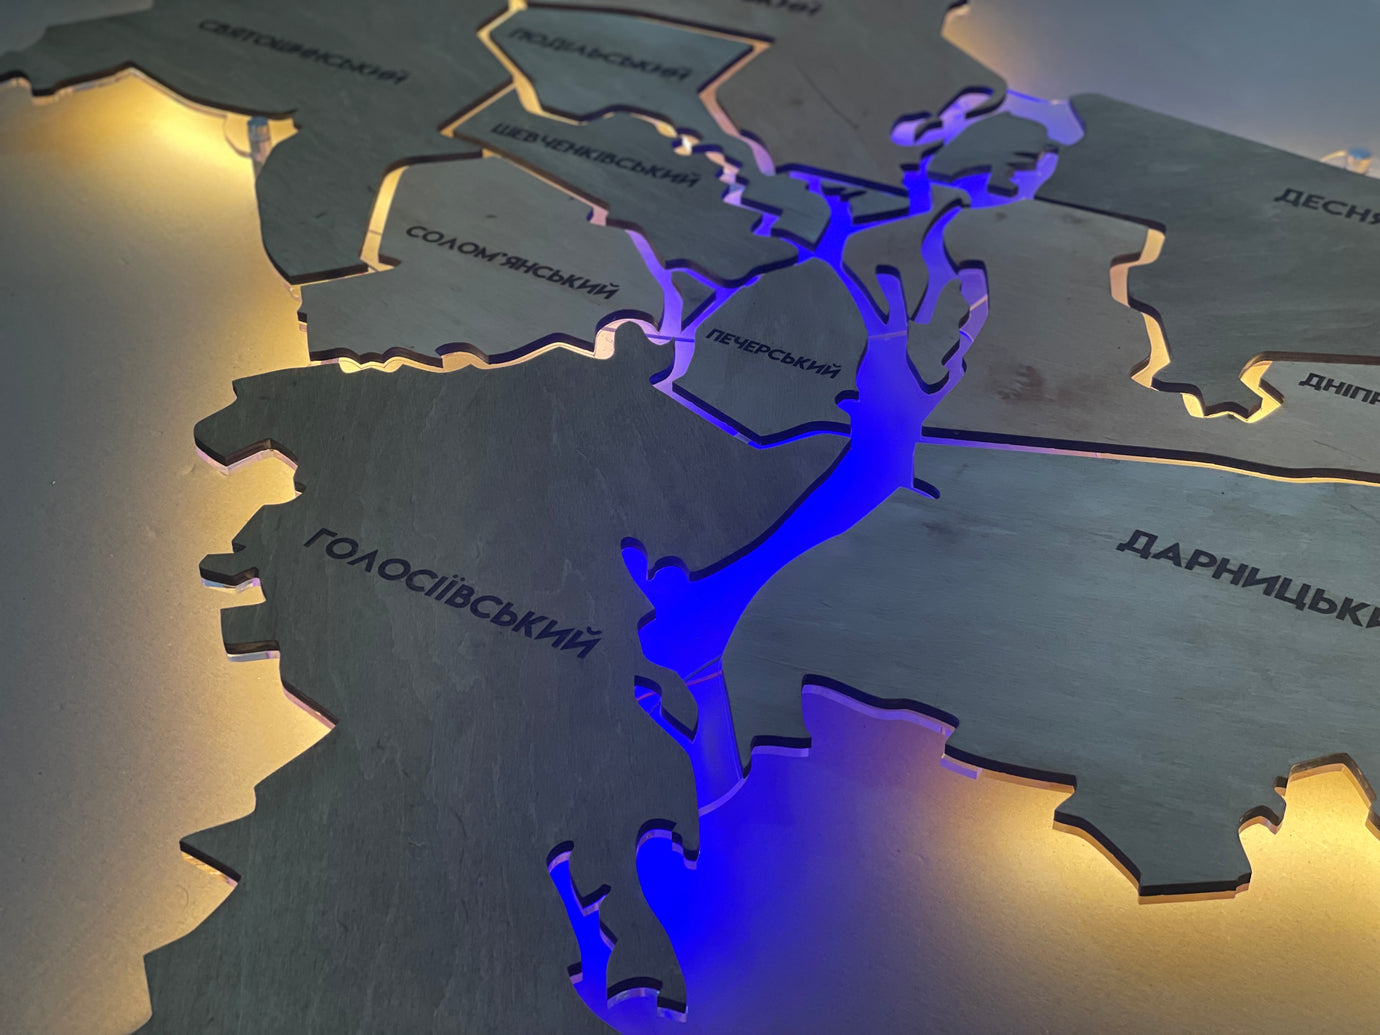 Карта міста Київ на акрилі, з підсвіткою між районами, колір Light Tree